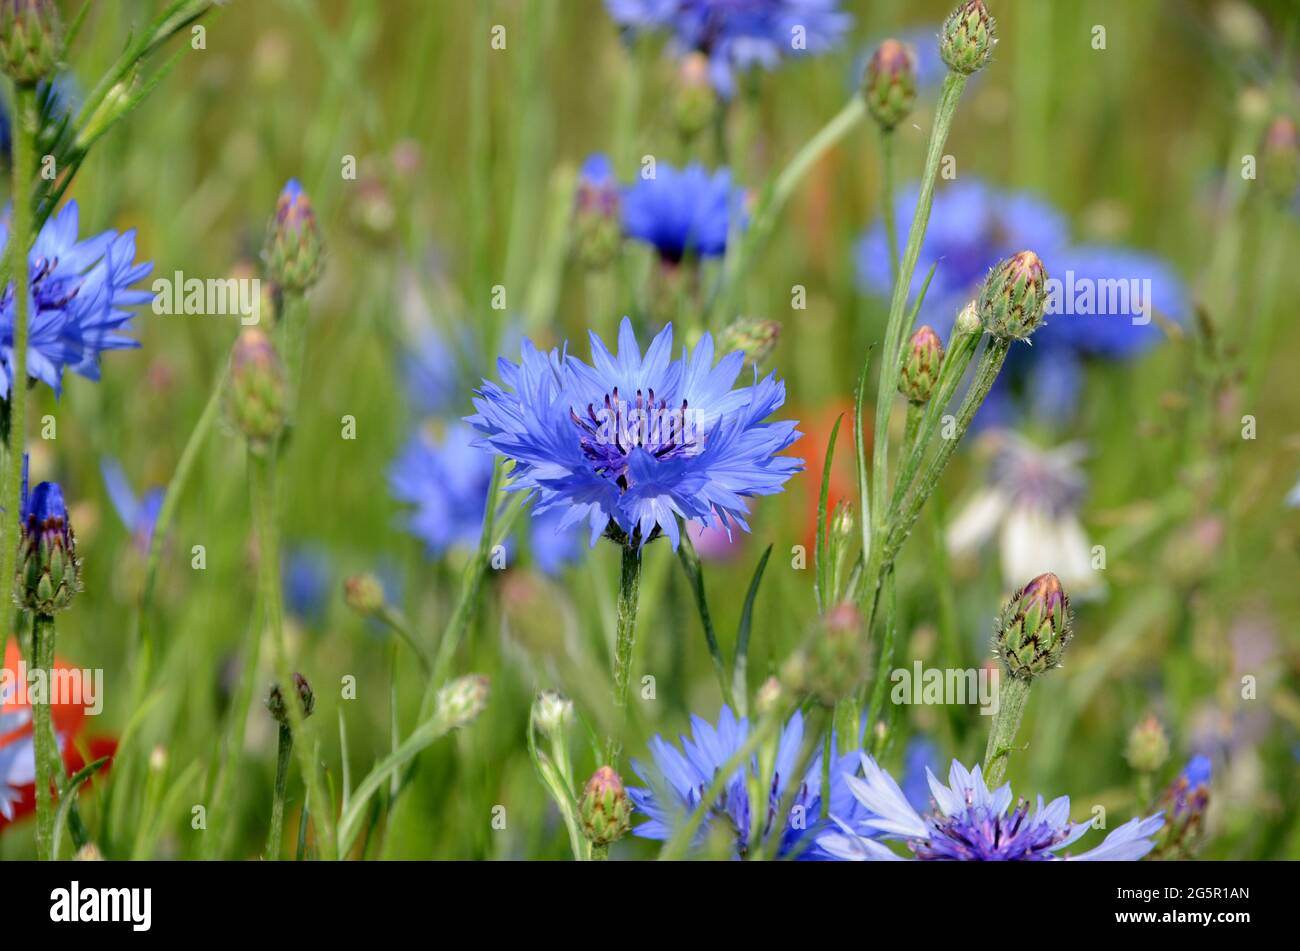 Vista en un campo con flores sn varios colores, pero con el foco en una cornflower azul Foto de stock